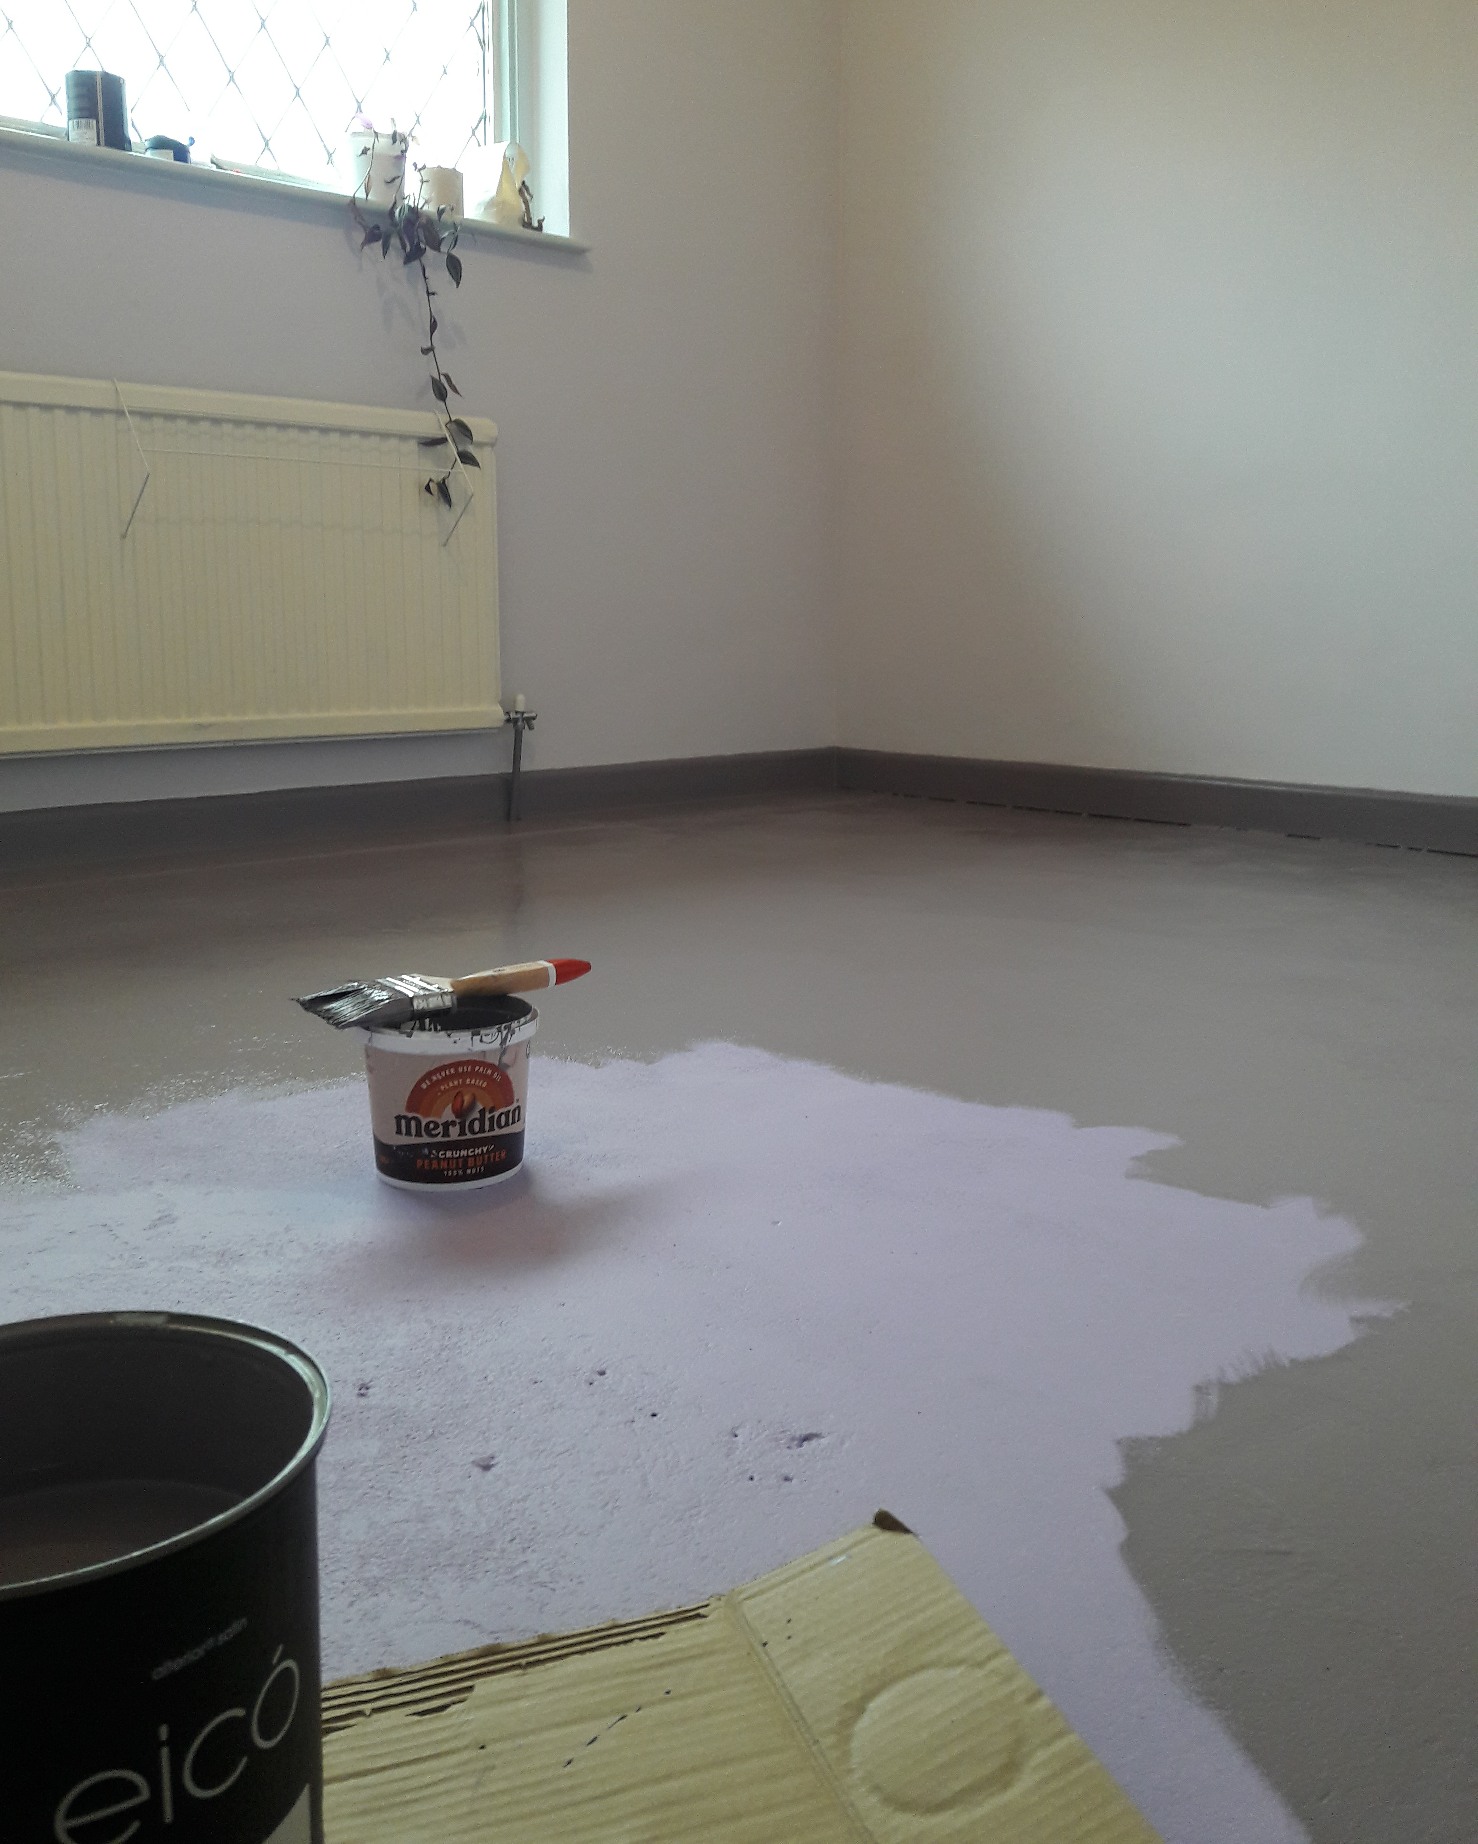 Overcoat of Eico Alterior floor paint over tinted Grepp V primer.